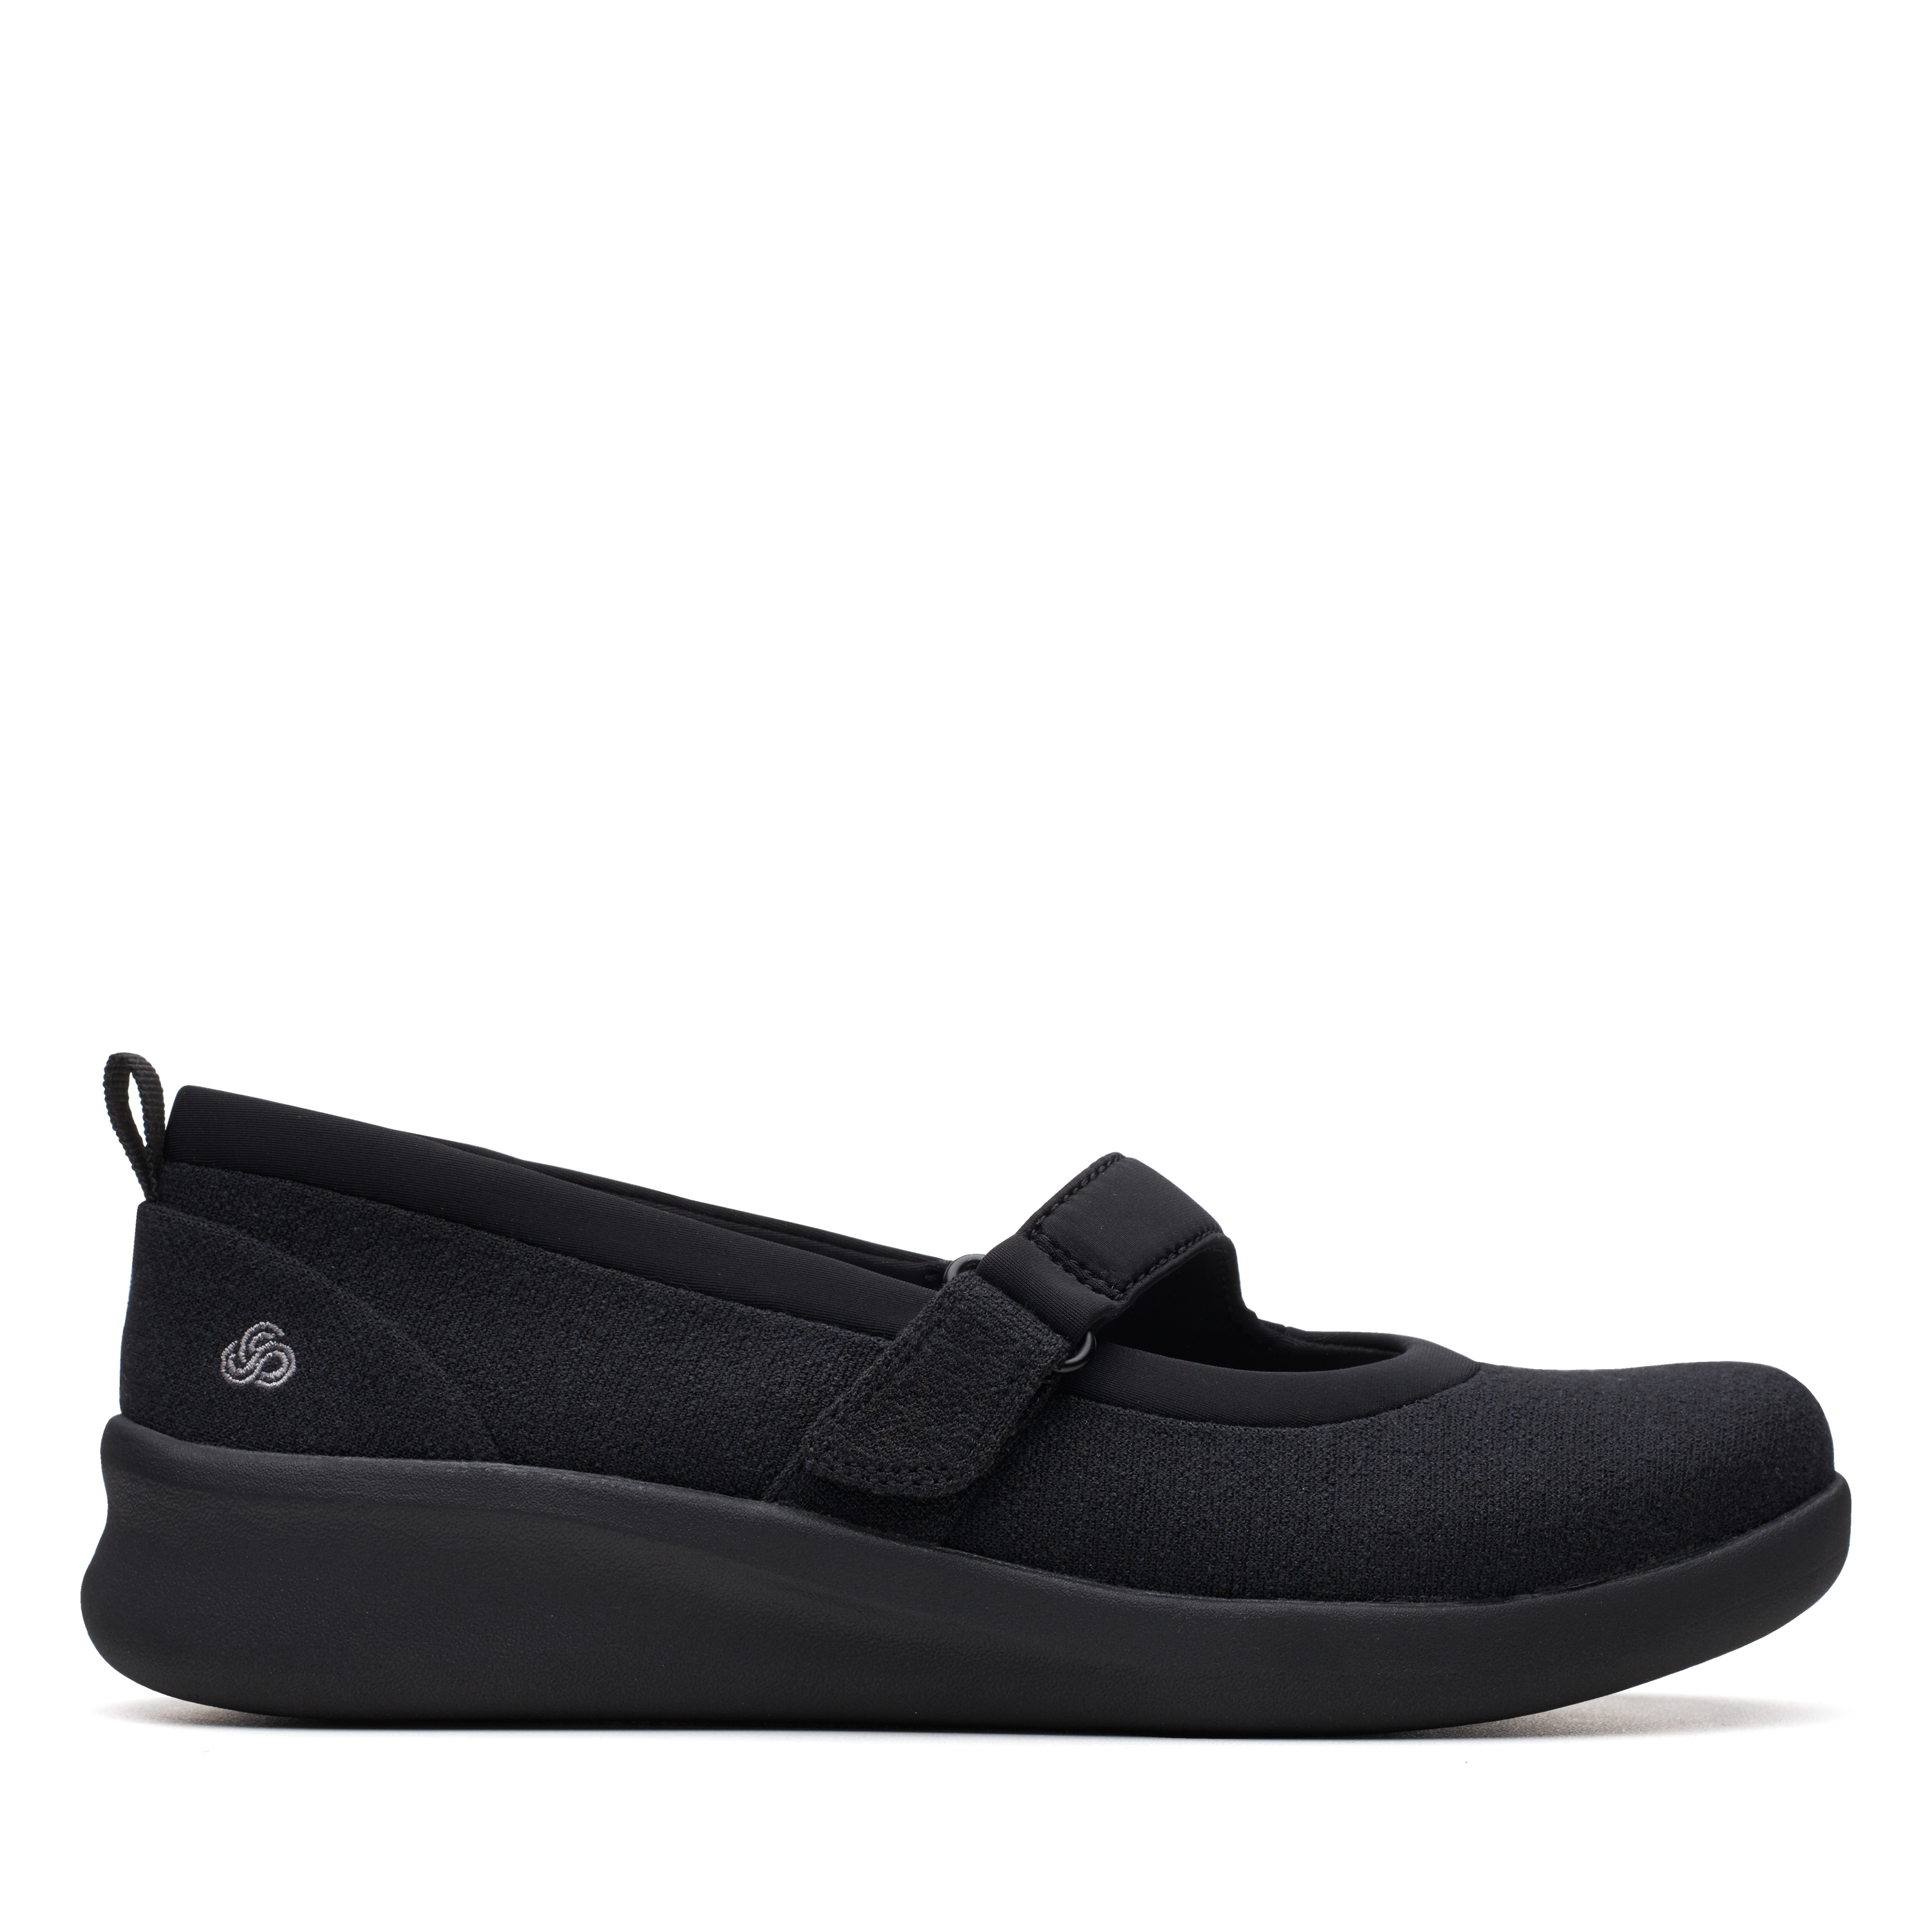 Clarks | Sillian2.0Soul Black Textile Slip On shoes